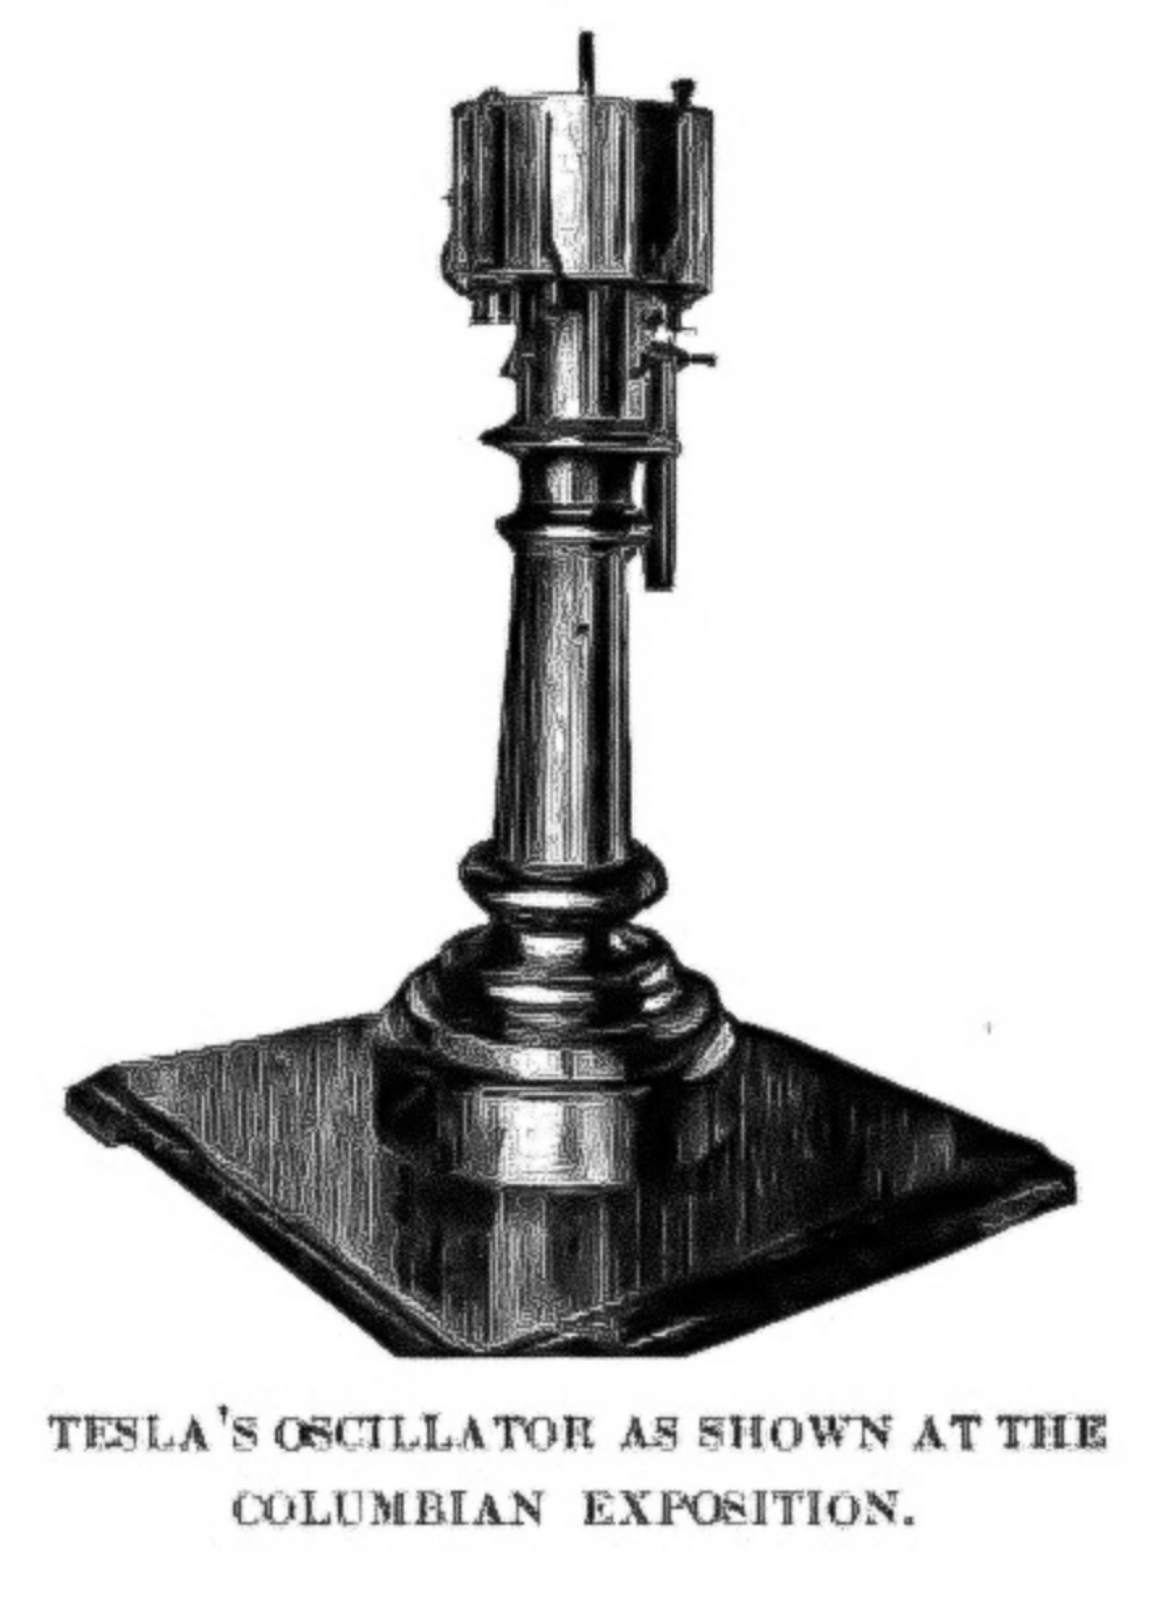 Oscillatore elettromeccanico di Tesla, generatore elettrico a vapore brevettato da Nikola Tesla nel 1893.